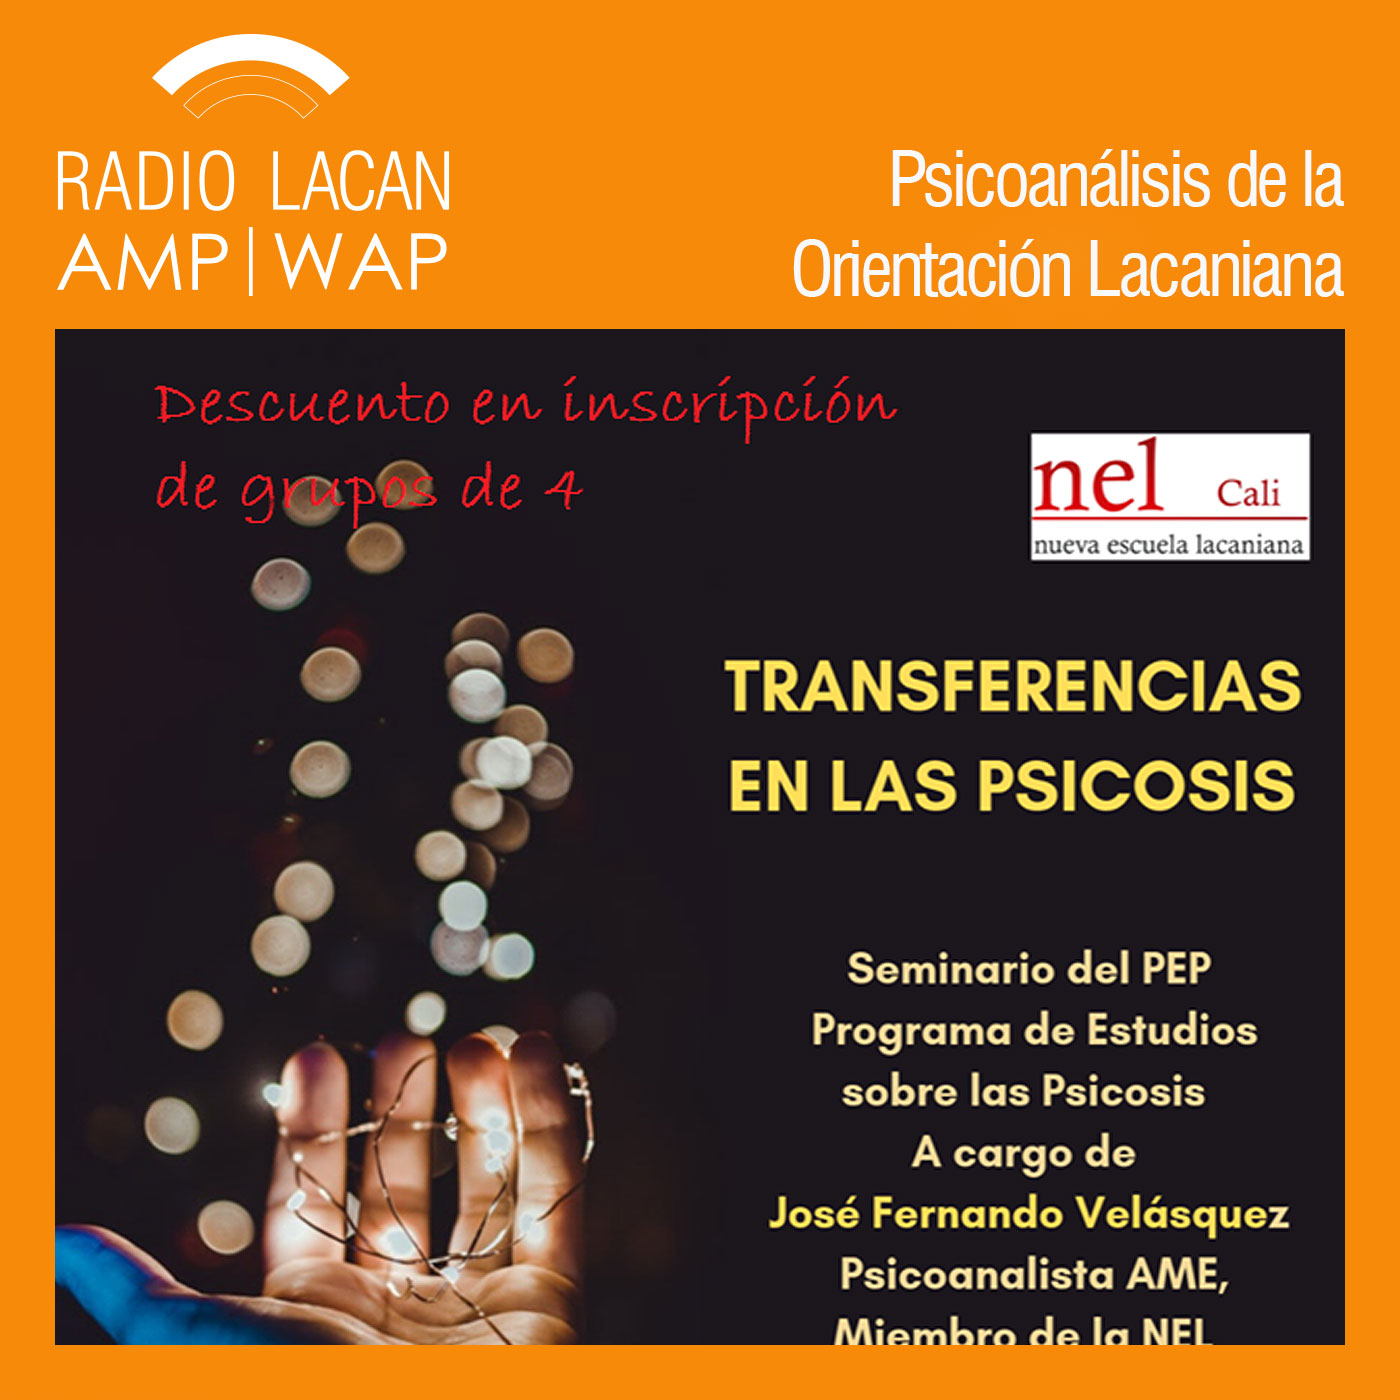 RadioLacan.com | NEL-CALI Programa de estudios sobre las psicosis. Seminario Transferencias en las psicosis